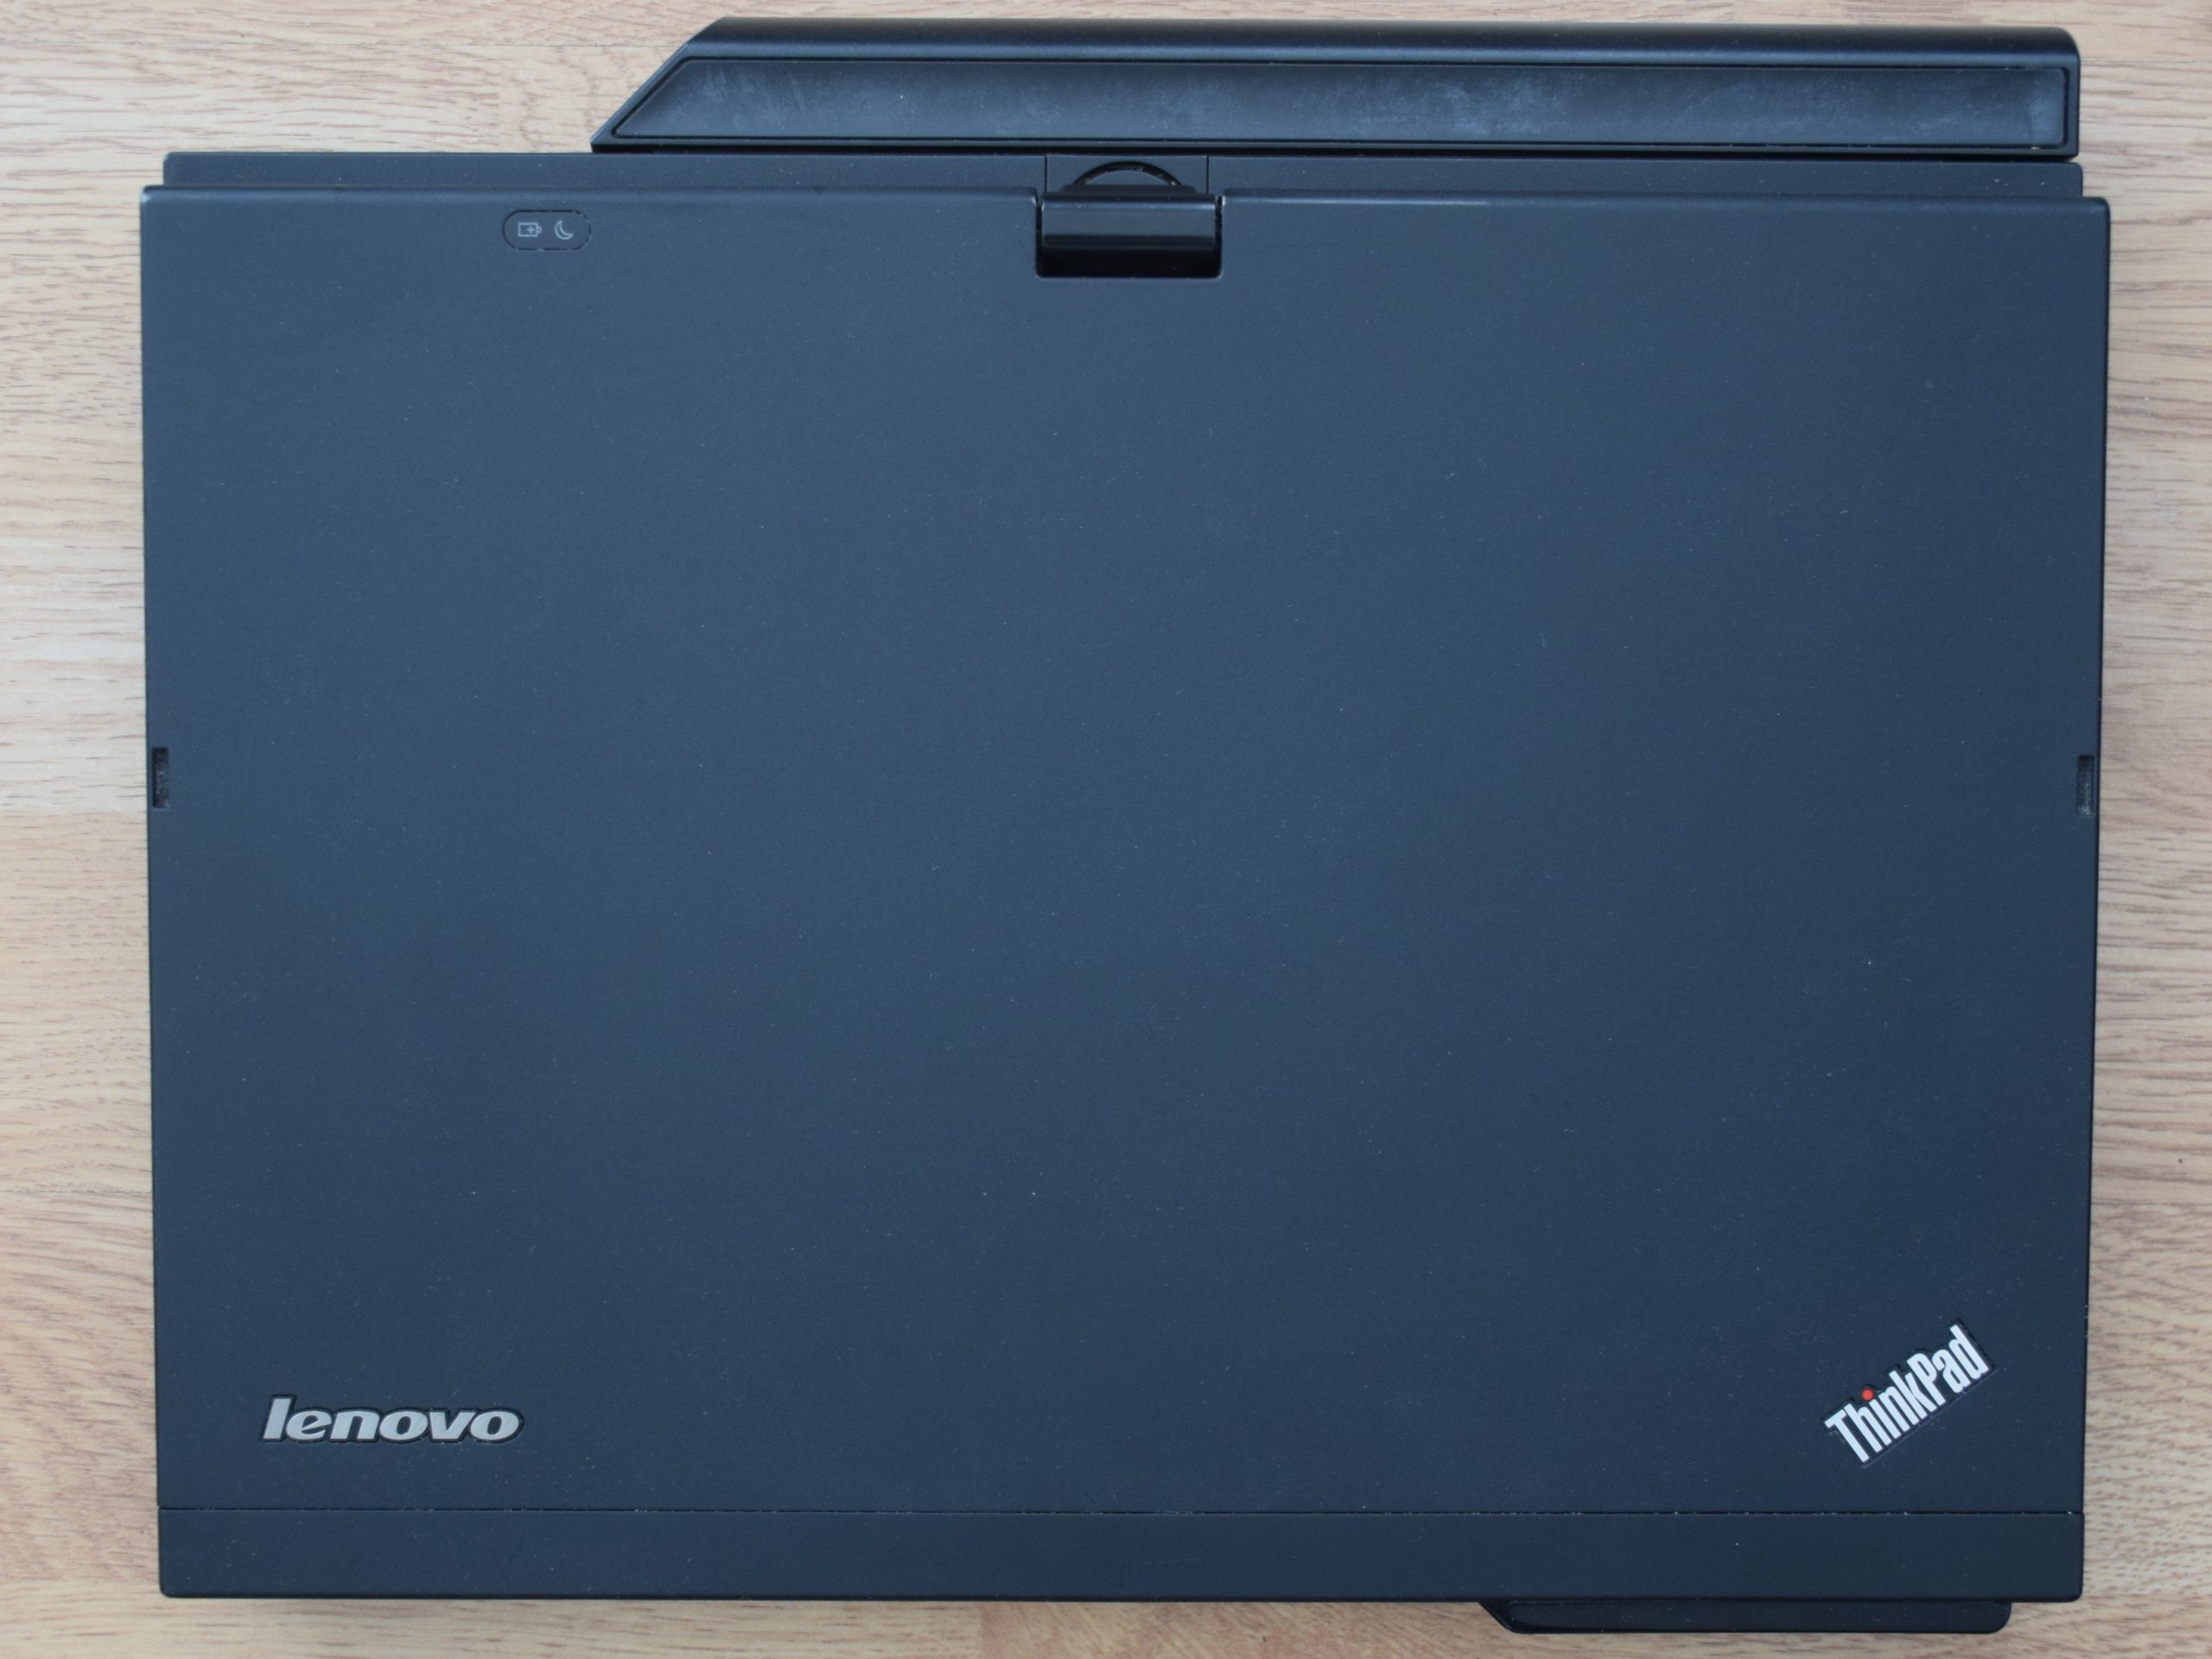 Lenovo ThinkPad X220 Tablet - Dessus